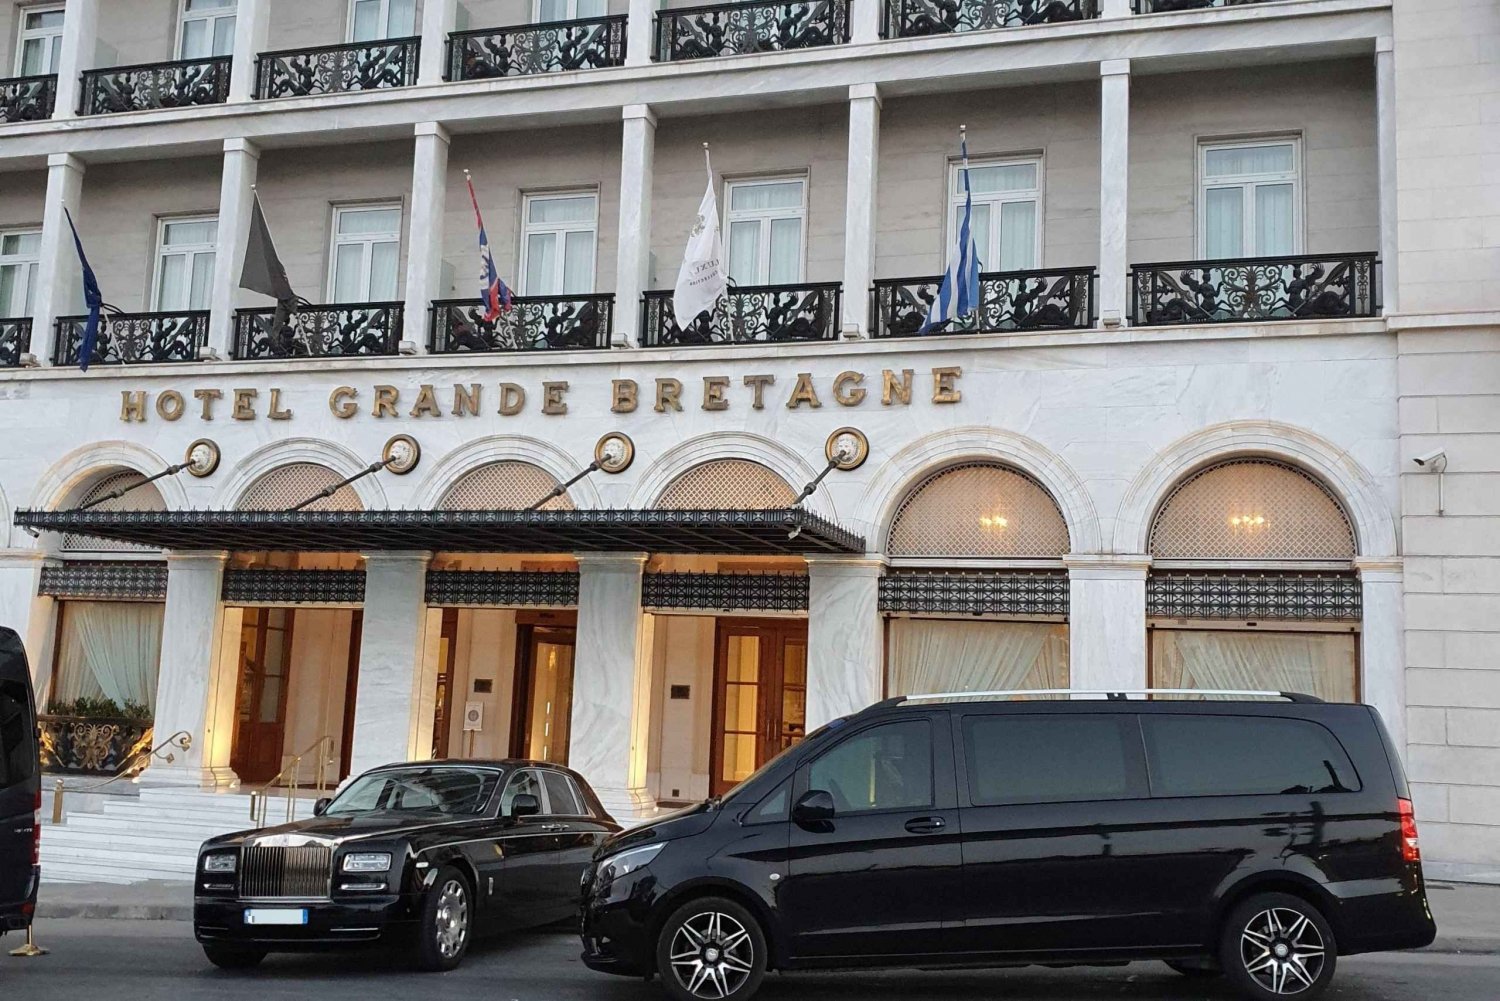 Aten Hotell till Pireus kryssningshamn Easy Van och Minibuss